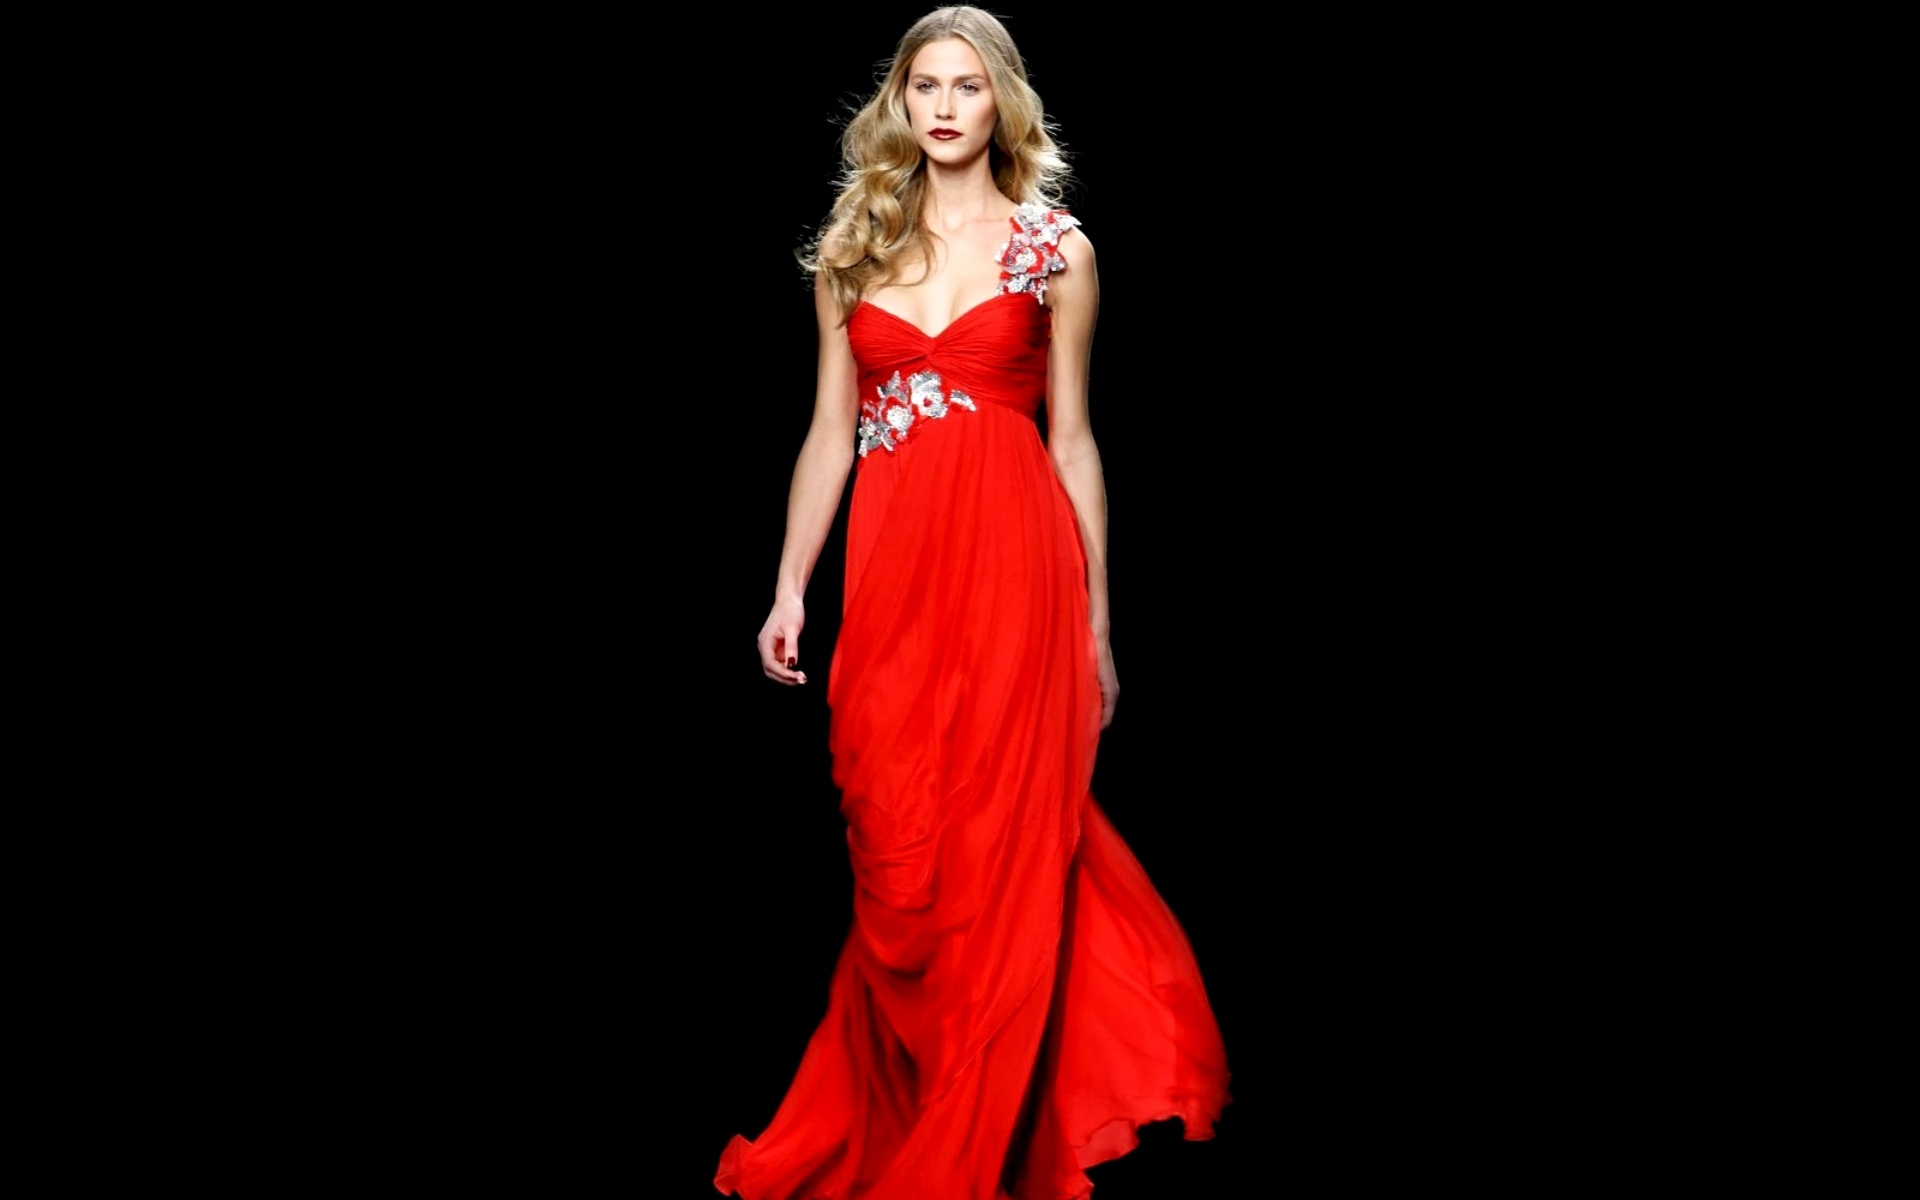 Платья будь вечера. Девушка в Вечернем платье. Красивое красное платье. Модели платьев. Красивые вечерние платья для девушек.